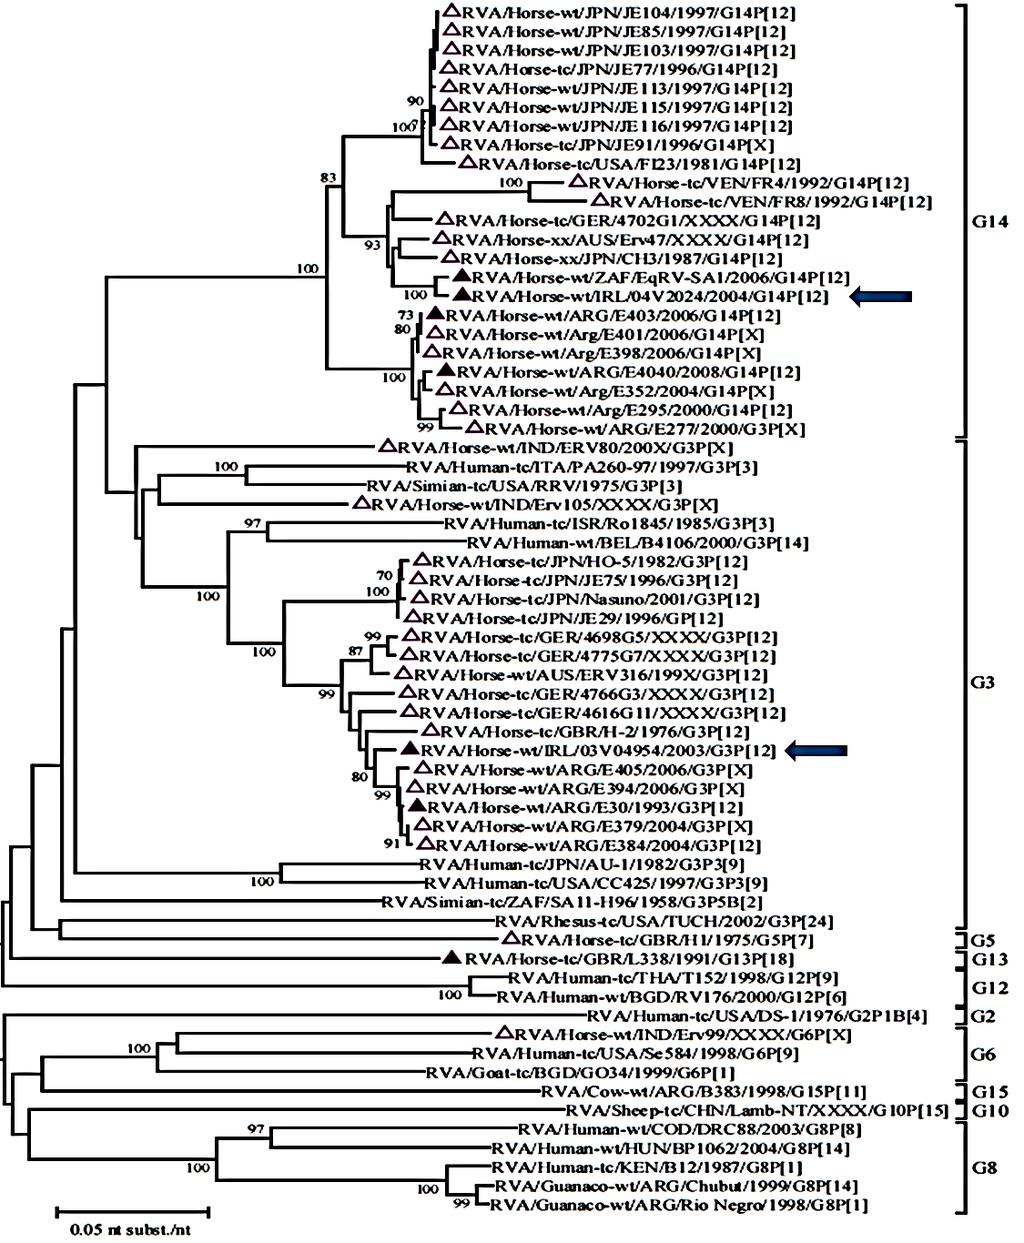 8. ábra. Ló RVA VP7 filogenetikai fa. Válogatott RVA törzsek VP7 génjének ORF nukleotid szekvenciája alapján készült filogenetikai fa. A genotípusok jelölése a jobb oldalon található.